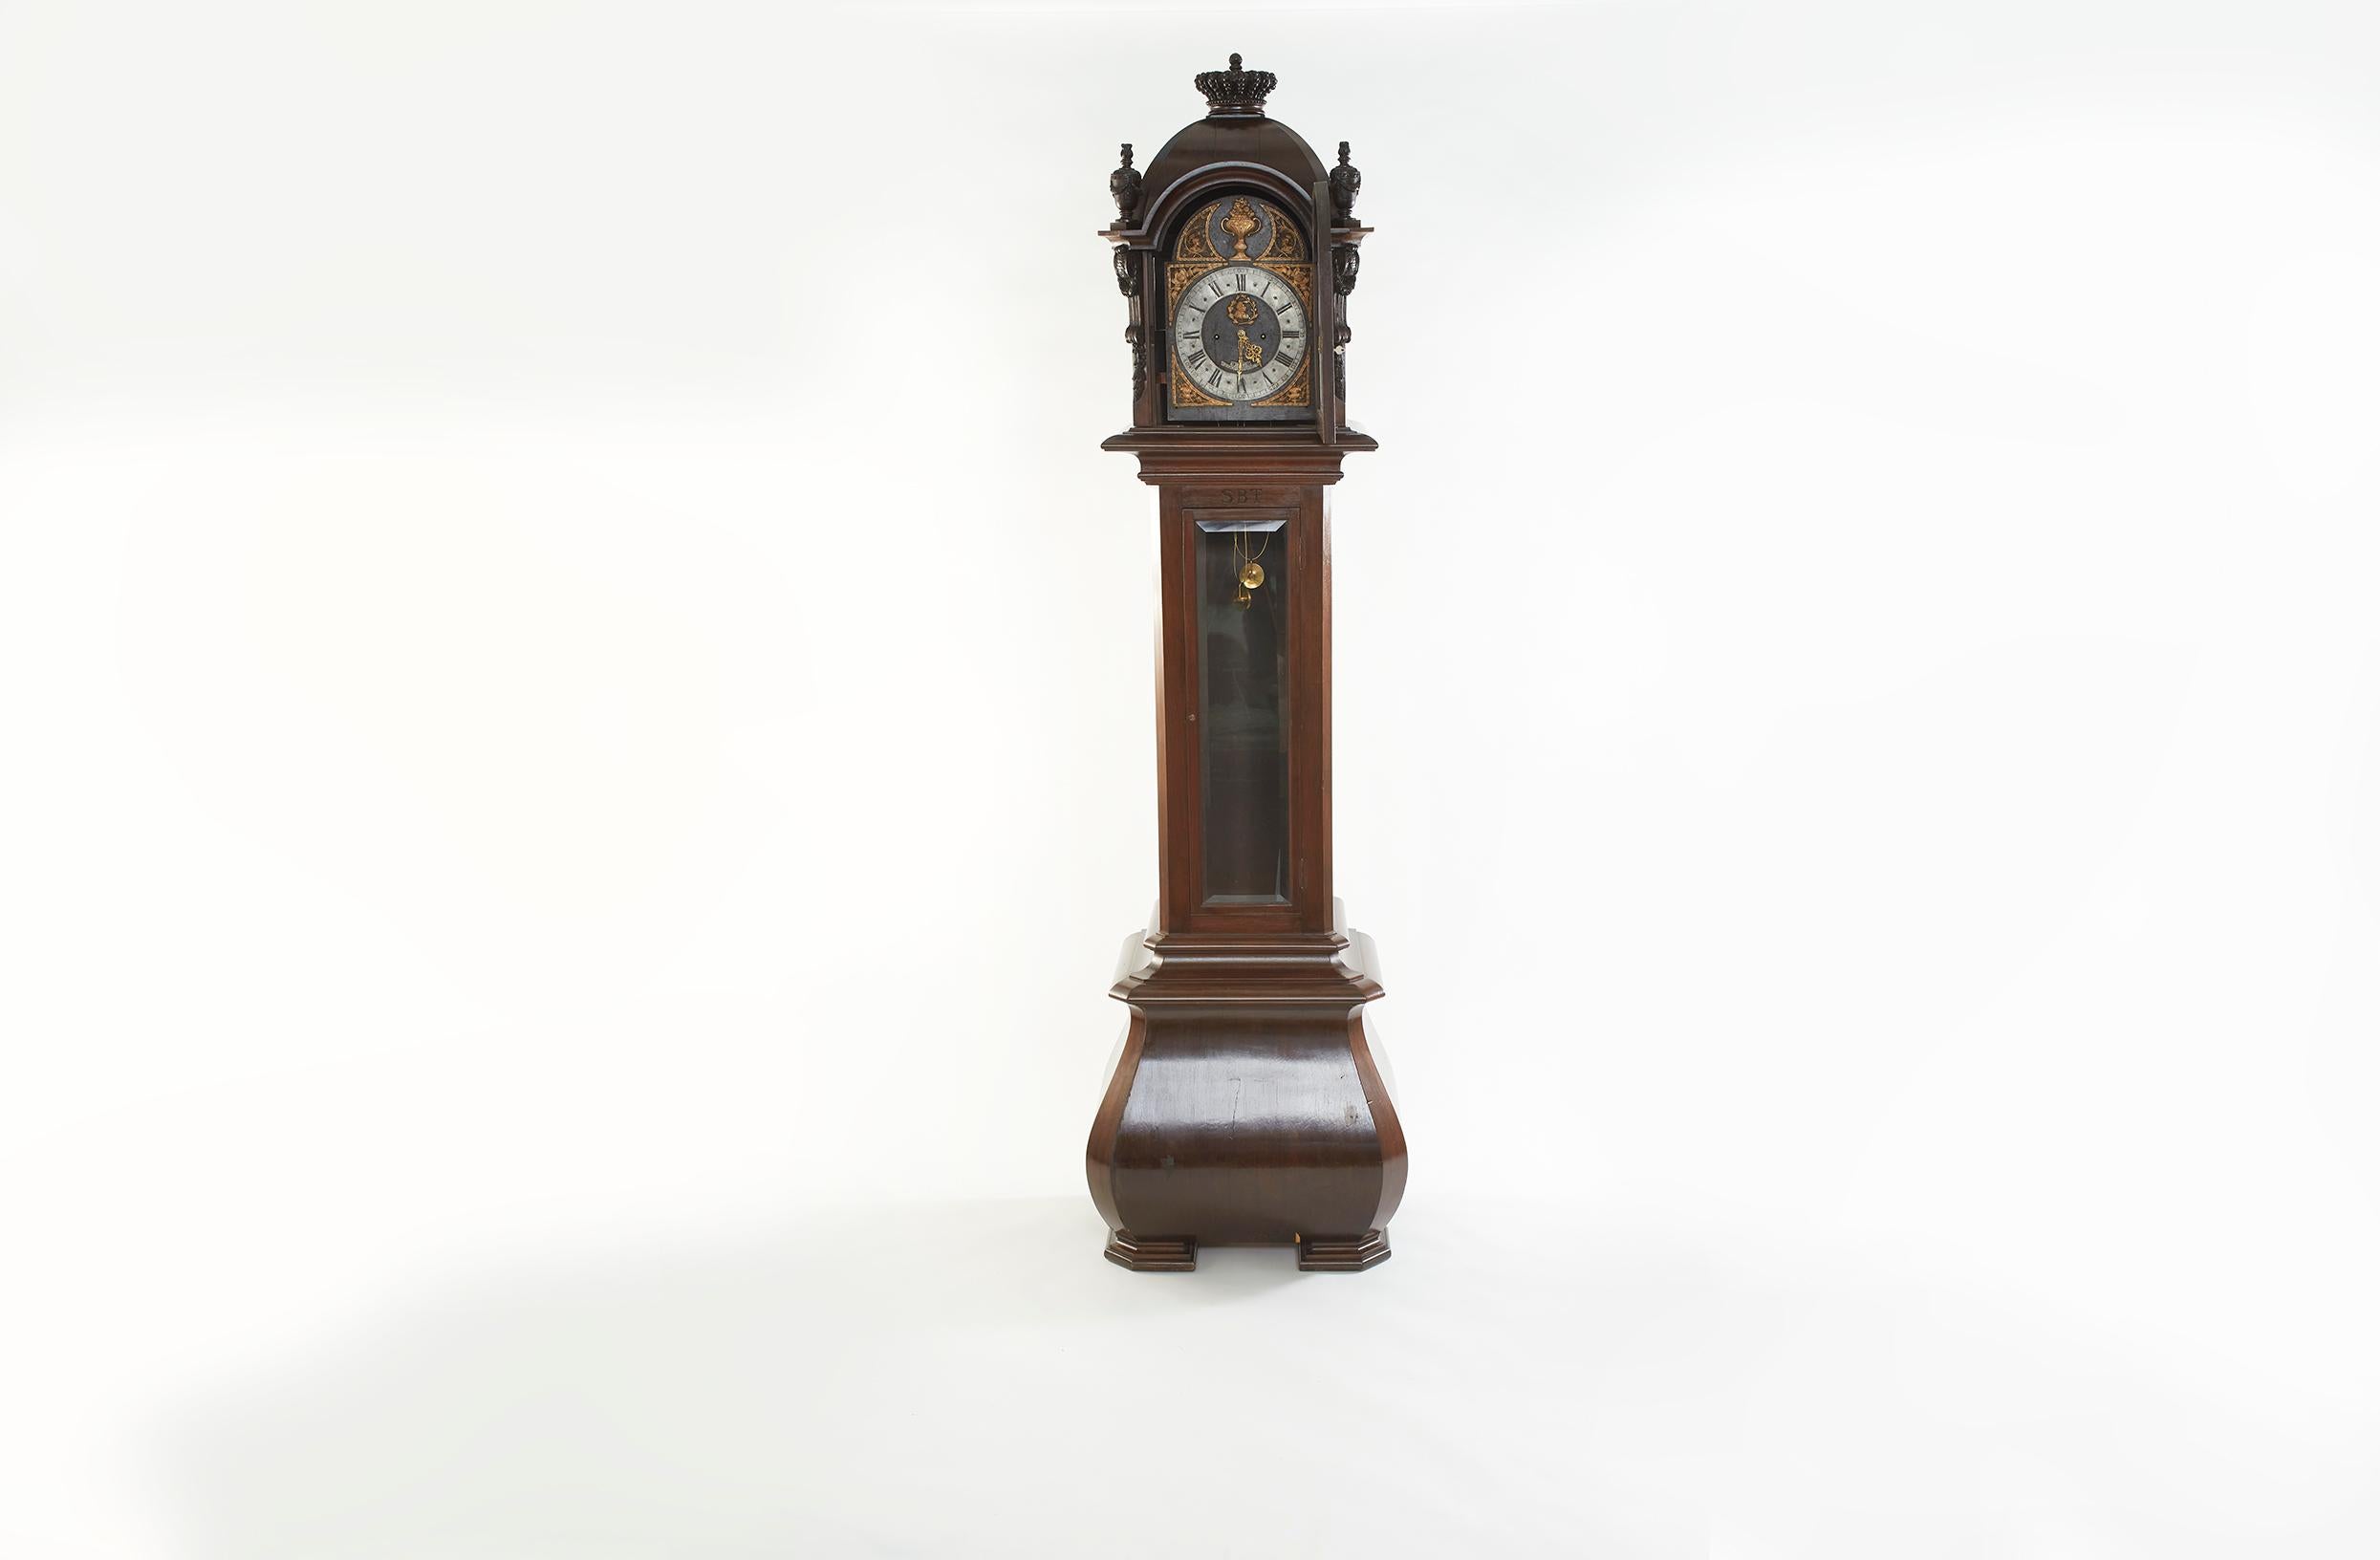 Mitte des 18. Jahrhunderts Nussbaumholz gerahmt deutschen 8-Tage-Grandfather Uhr. Die Standuhr hatte ein dunkles Nussbaumgehäuse mit ausgestelltem Sockel, einer Haube mit Halbsäulen und gedrechselten Endstücken. Eisernes Zifferblatt mit versilbertem